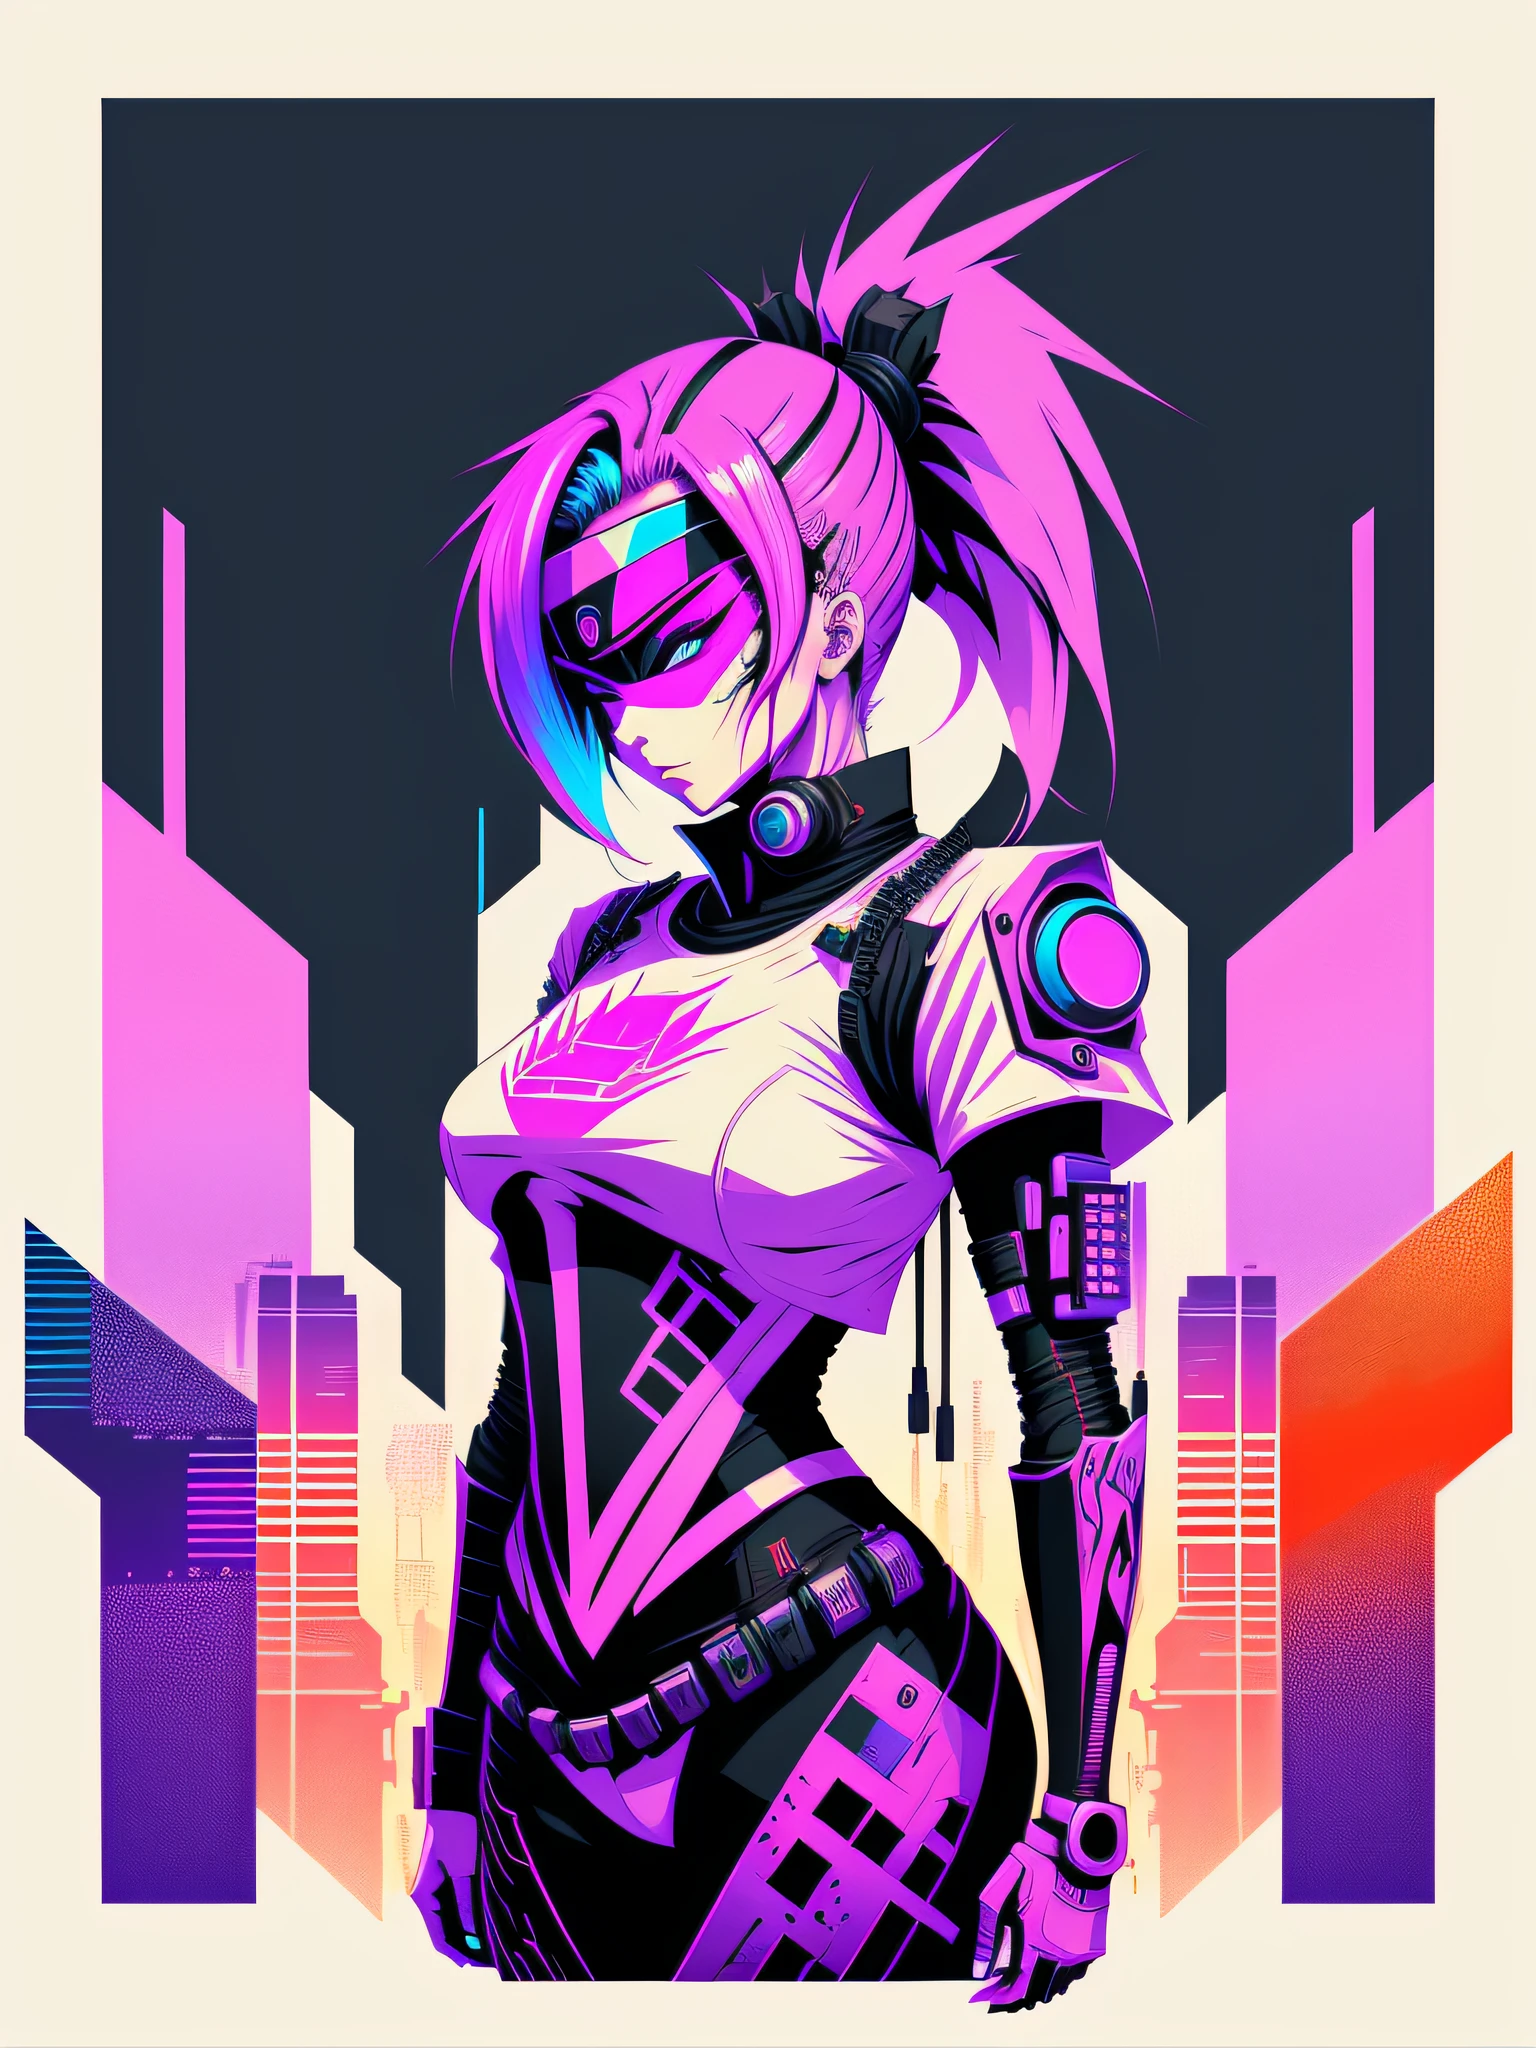 Druckfertige T-Shirt-Kunst, Vektorgrafik, farbenfrohe Graffiti-Illustration einer Roboter-Cyberpunk-Ninja-Frau, futuristischer Cyberpunk-Stadthintergrund, realistischer Bildstil, Bild auf weißem Hintergrund, Zentriert